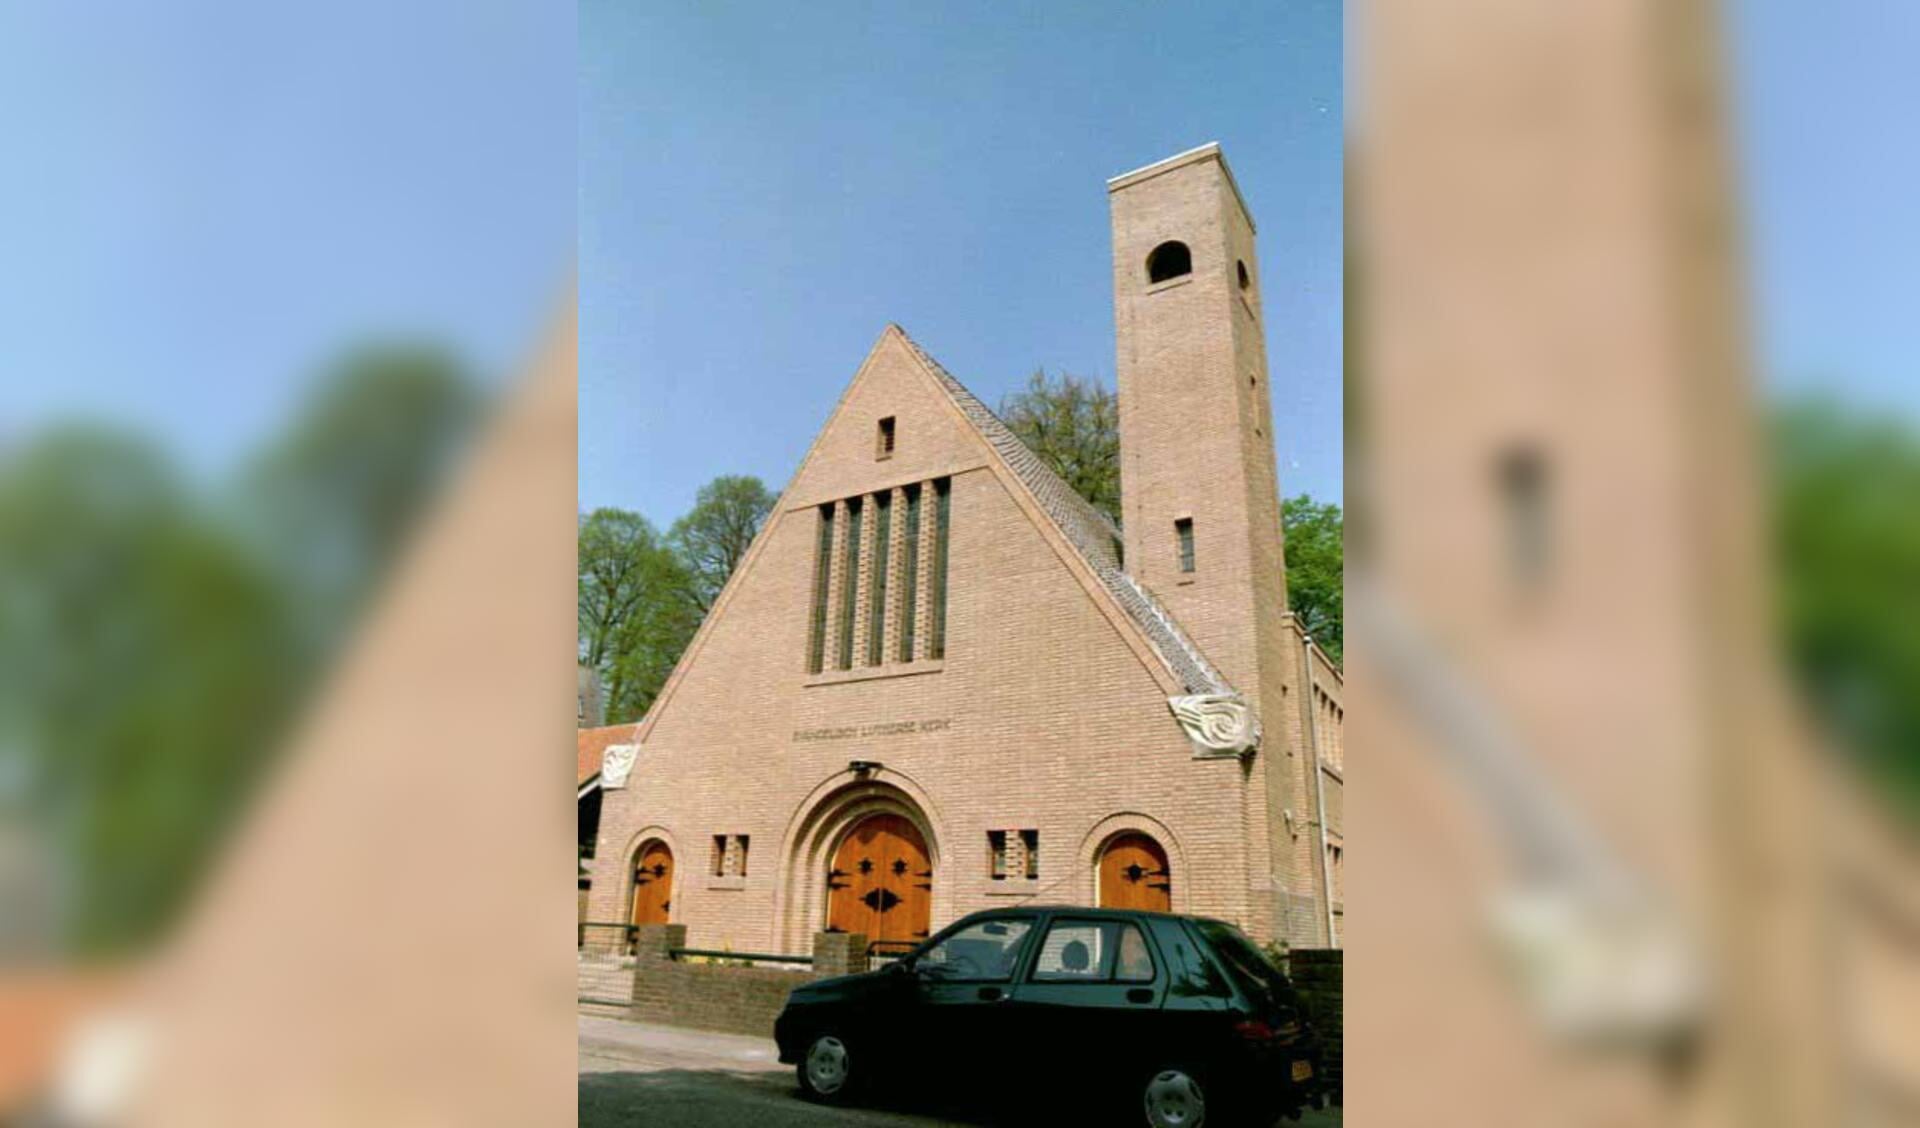 Kerkgebouw in Hilversum krijgt een nieuwe bestemming.